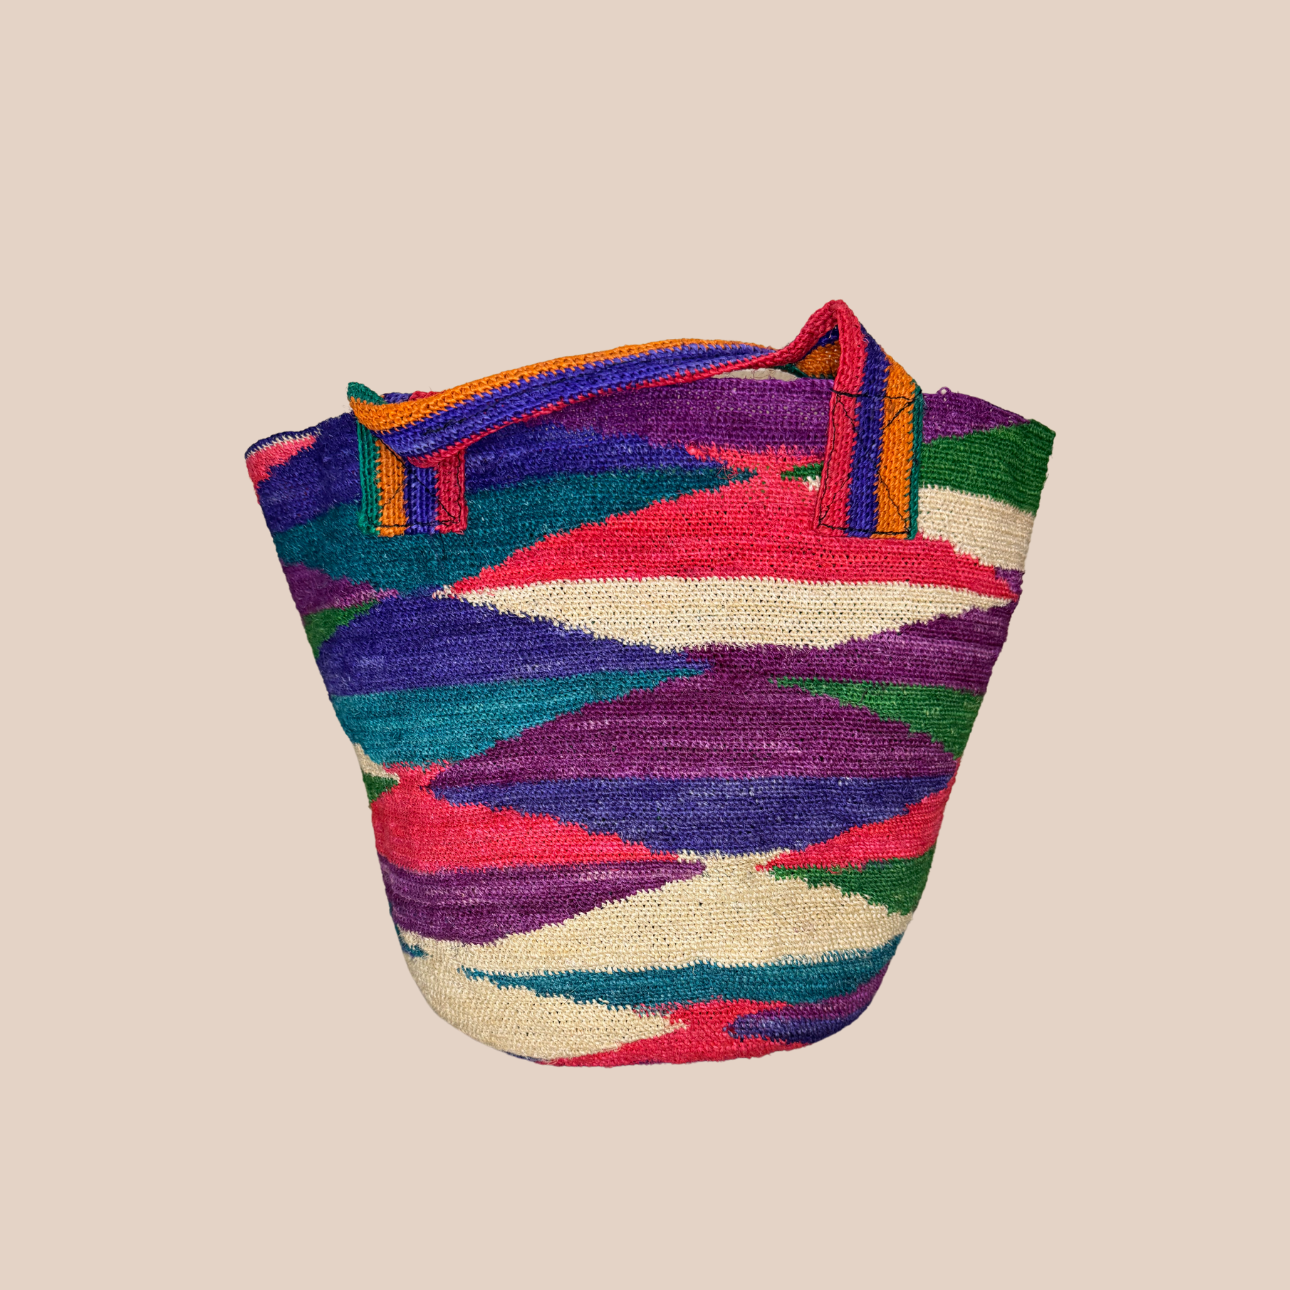 Image du sac IKAL de Maison Badigo, sac en fibres de cactus multicolore unique et tendance